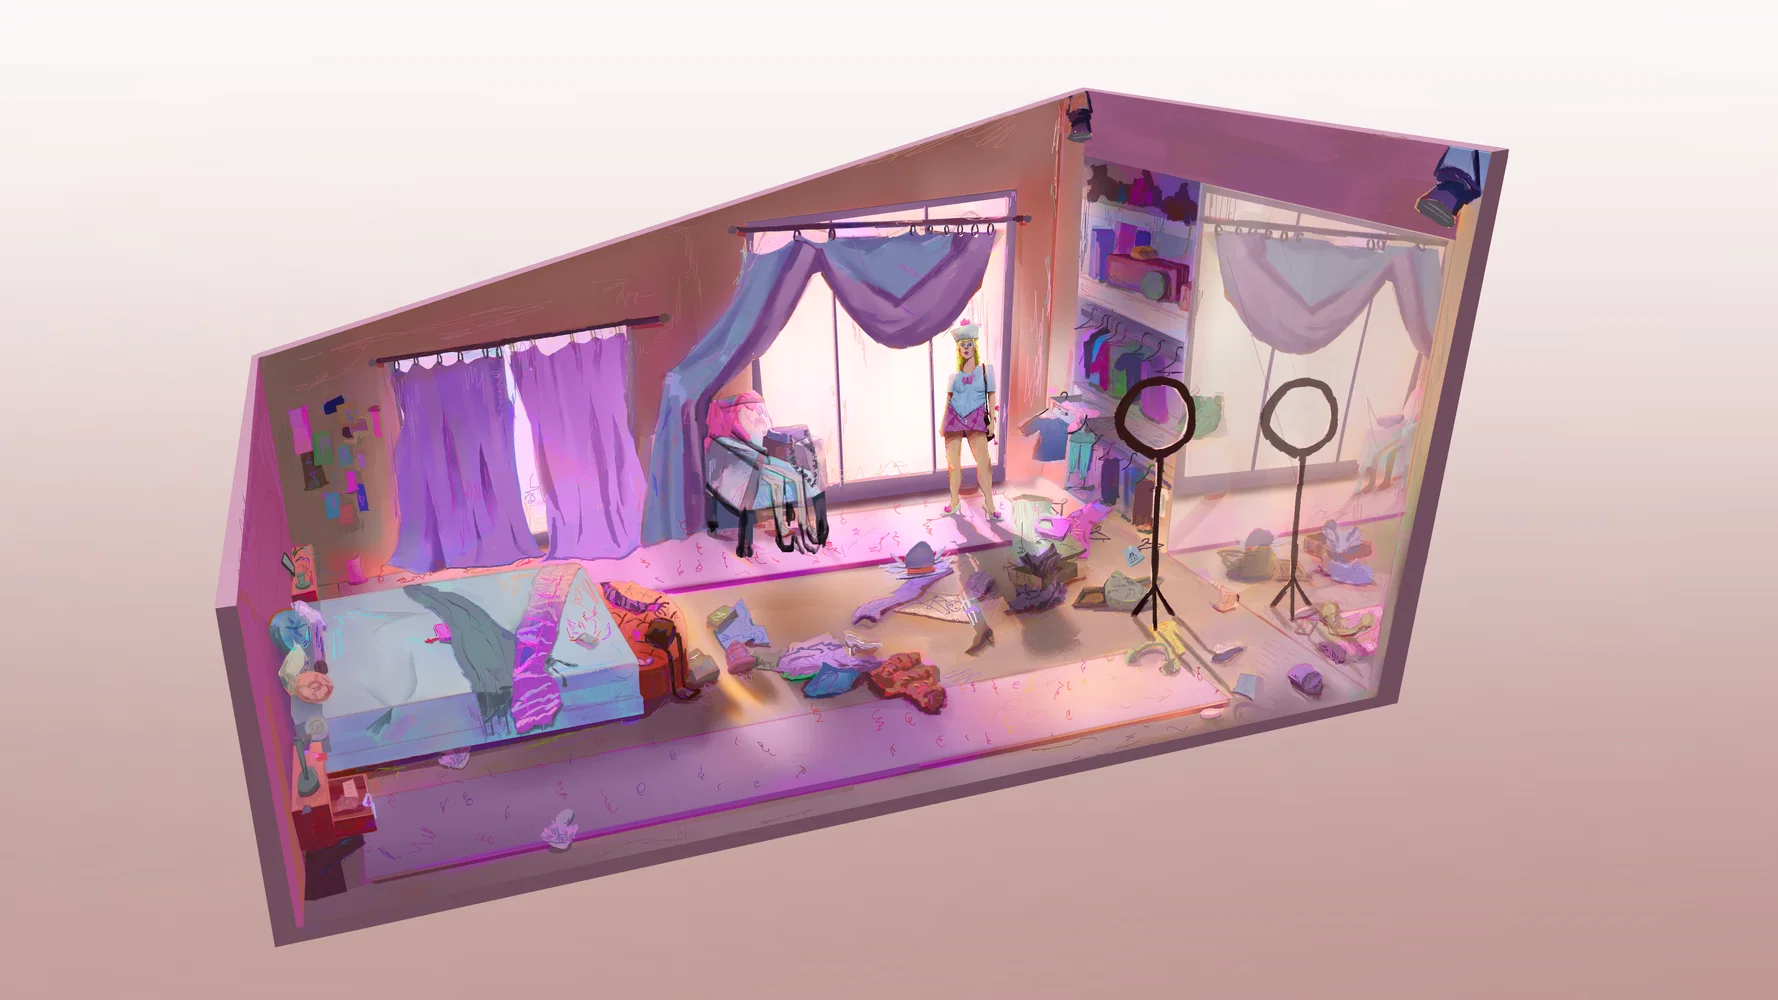 Laurel's bedroom design.